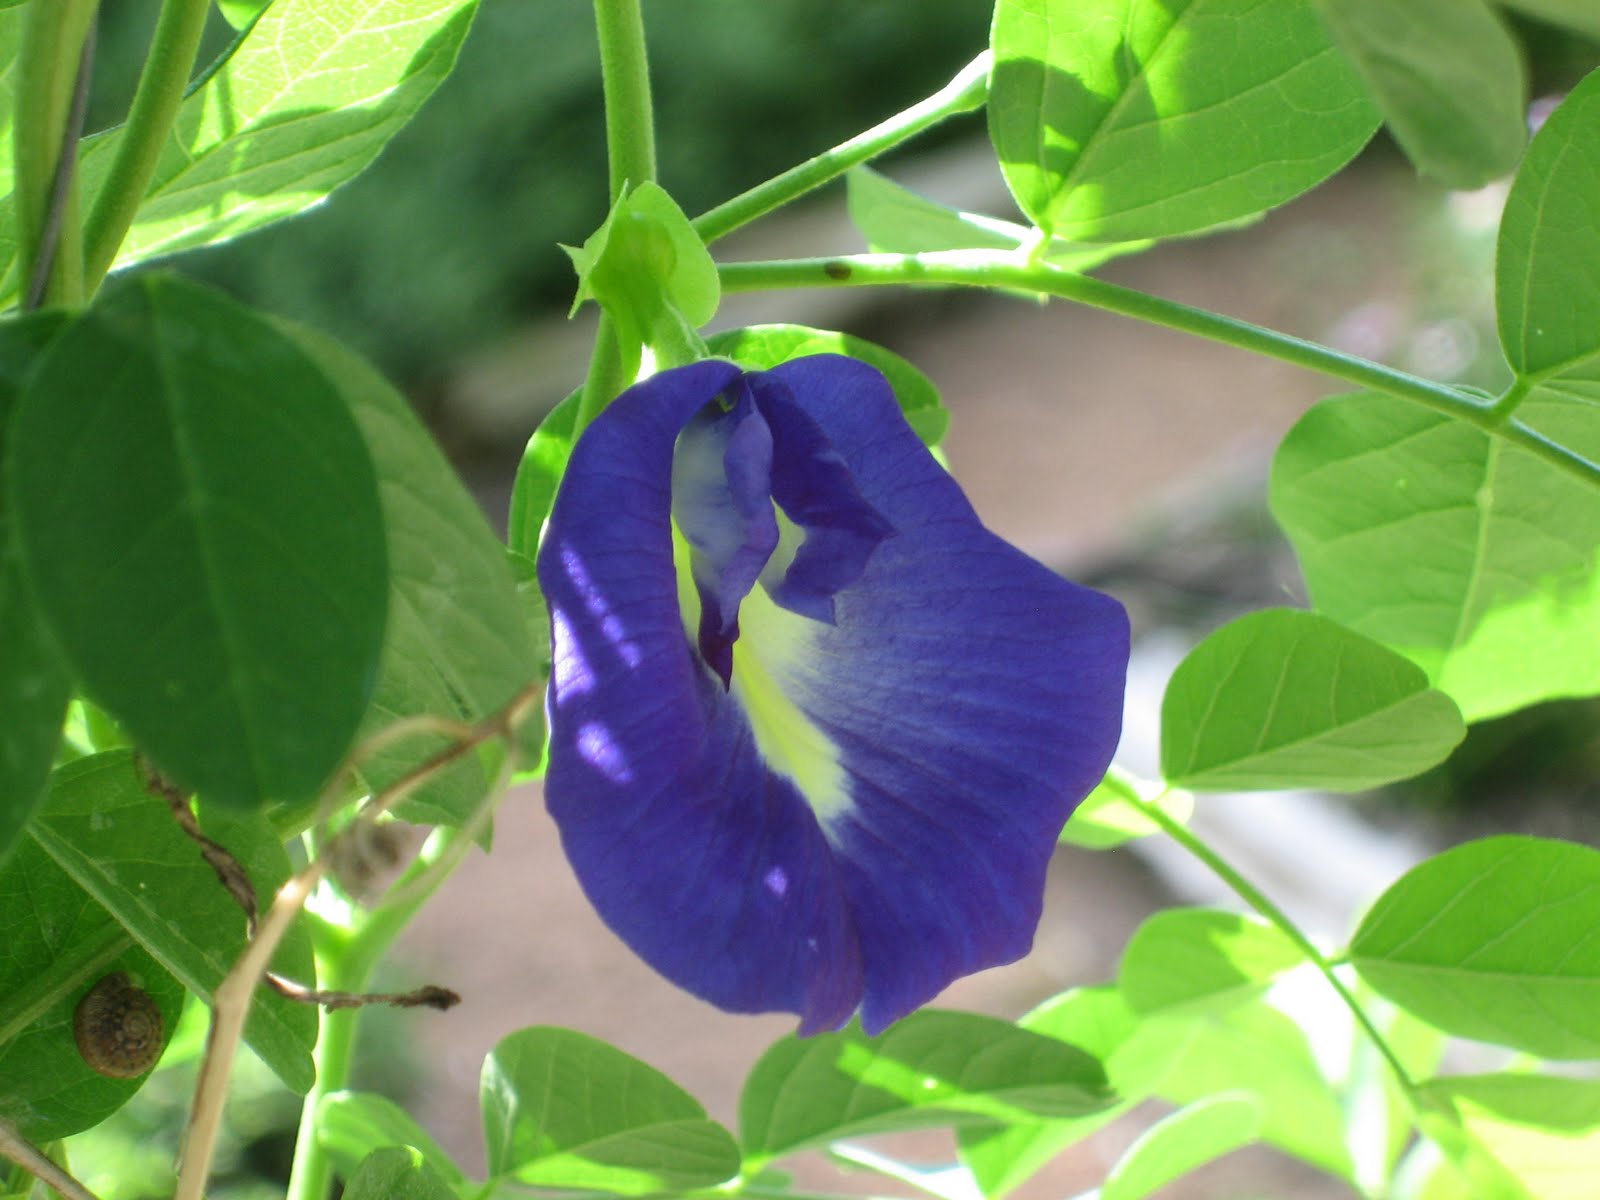 lisa bonassin's garden: what's blooming now - butterfly pea vine 07